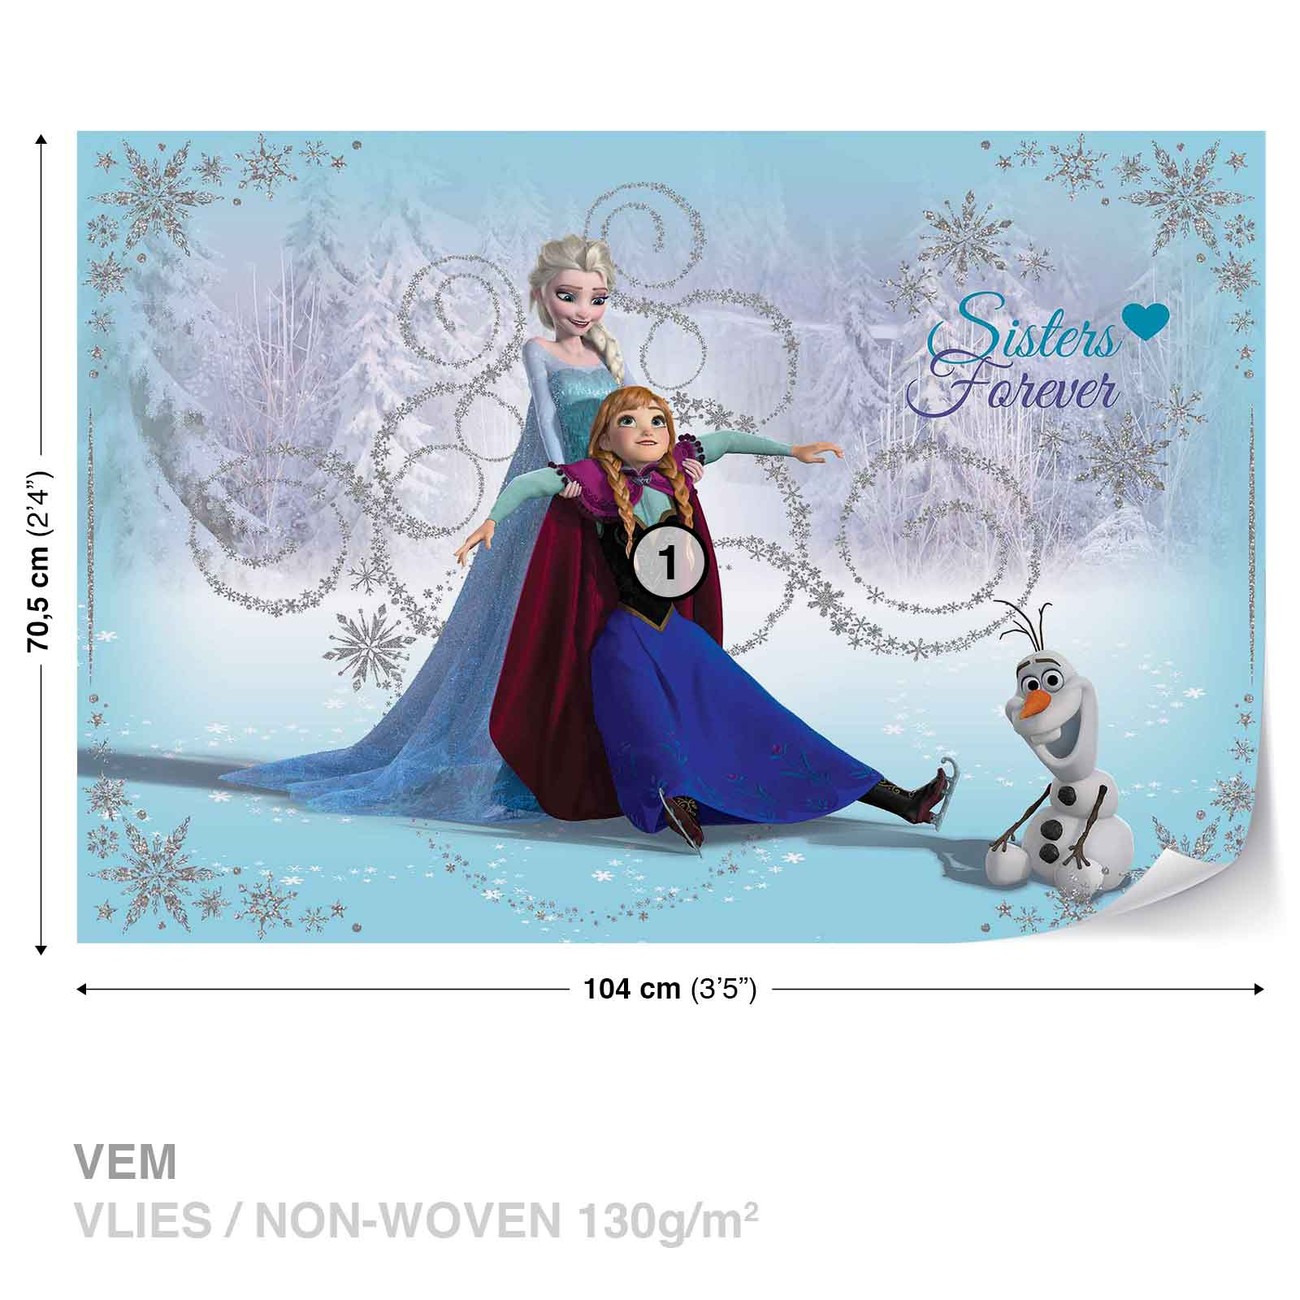 Doctor en Filosofía Atrevimiento A nueve Disney Frozen Elsa Anna Olaf Wall Paper Mural | Buy at EuroPosters